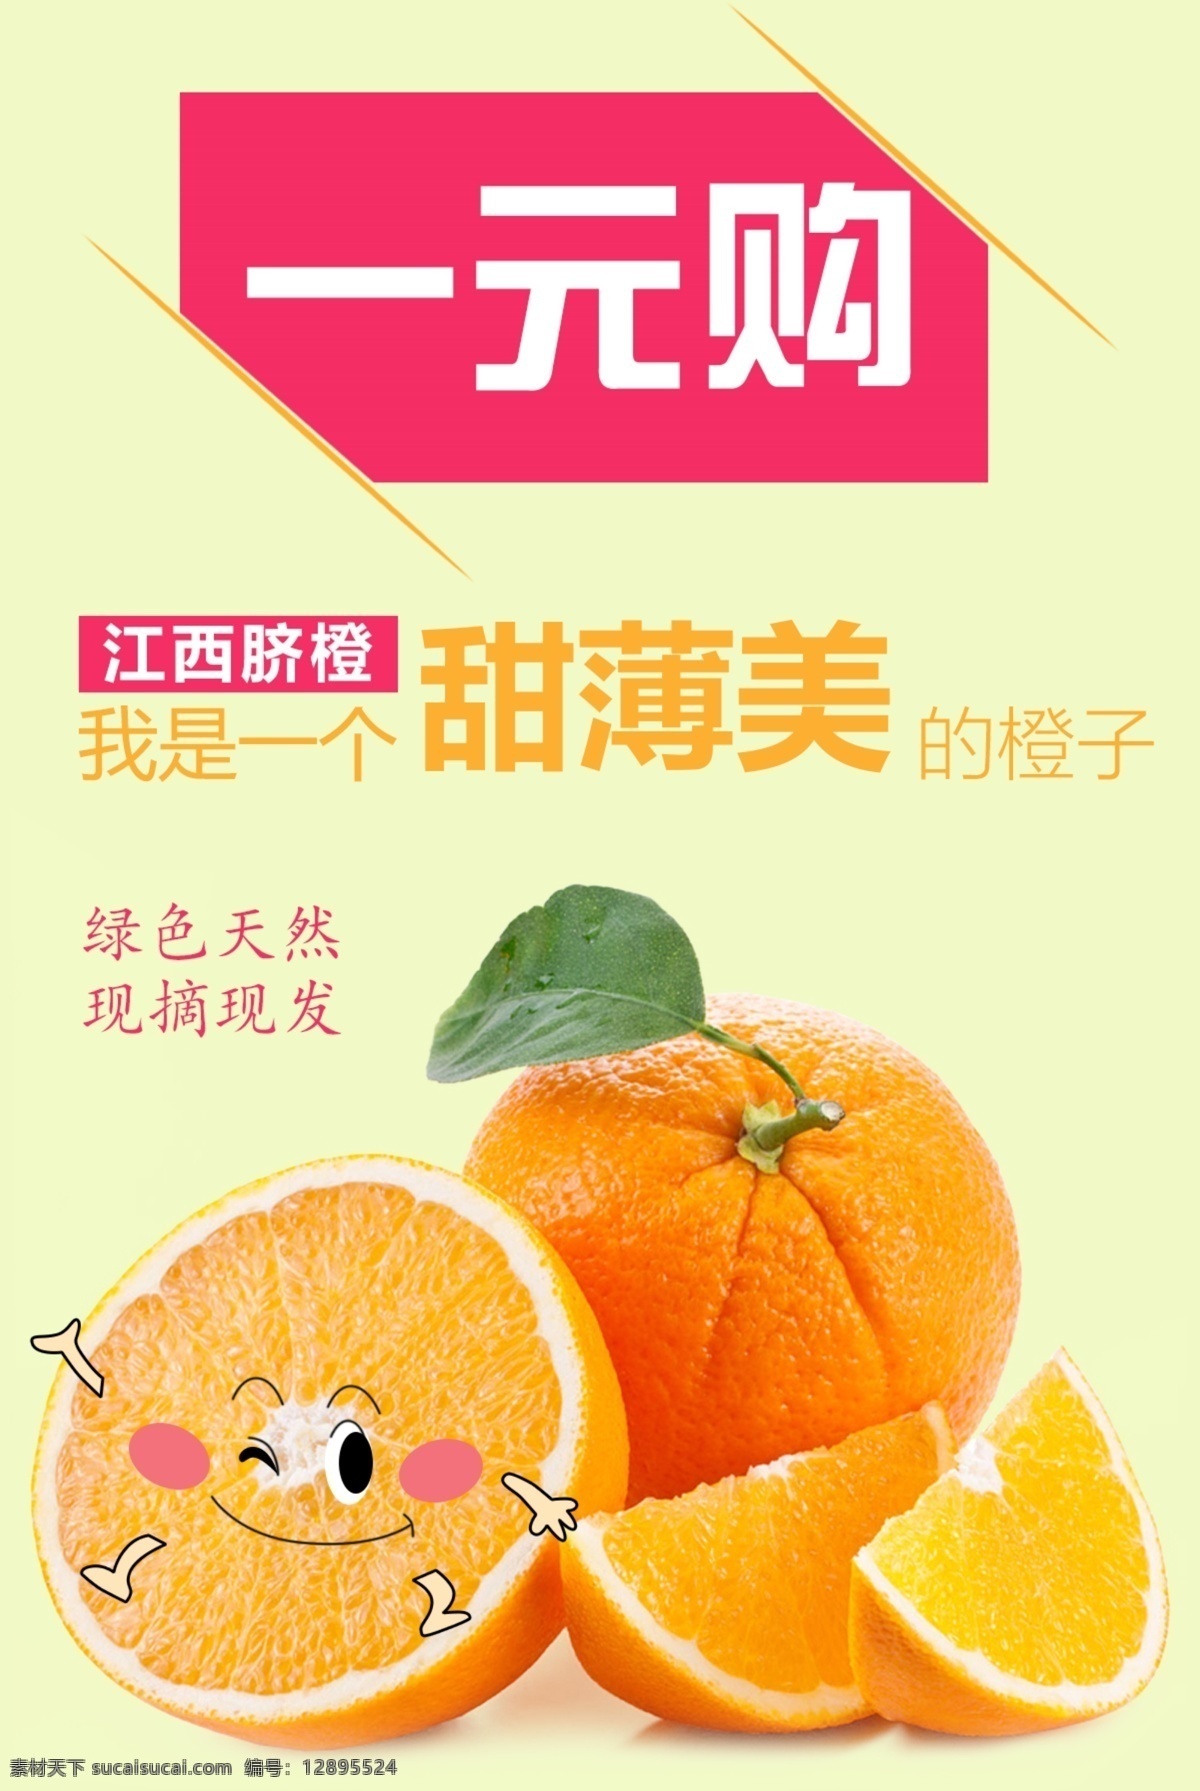 江西脐橙海报 江西 脐橙 橙子 鲜橙 简约 海报 广告 宣传 模板 一元 购 百货 微信 微商 淘宝 手机